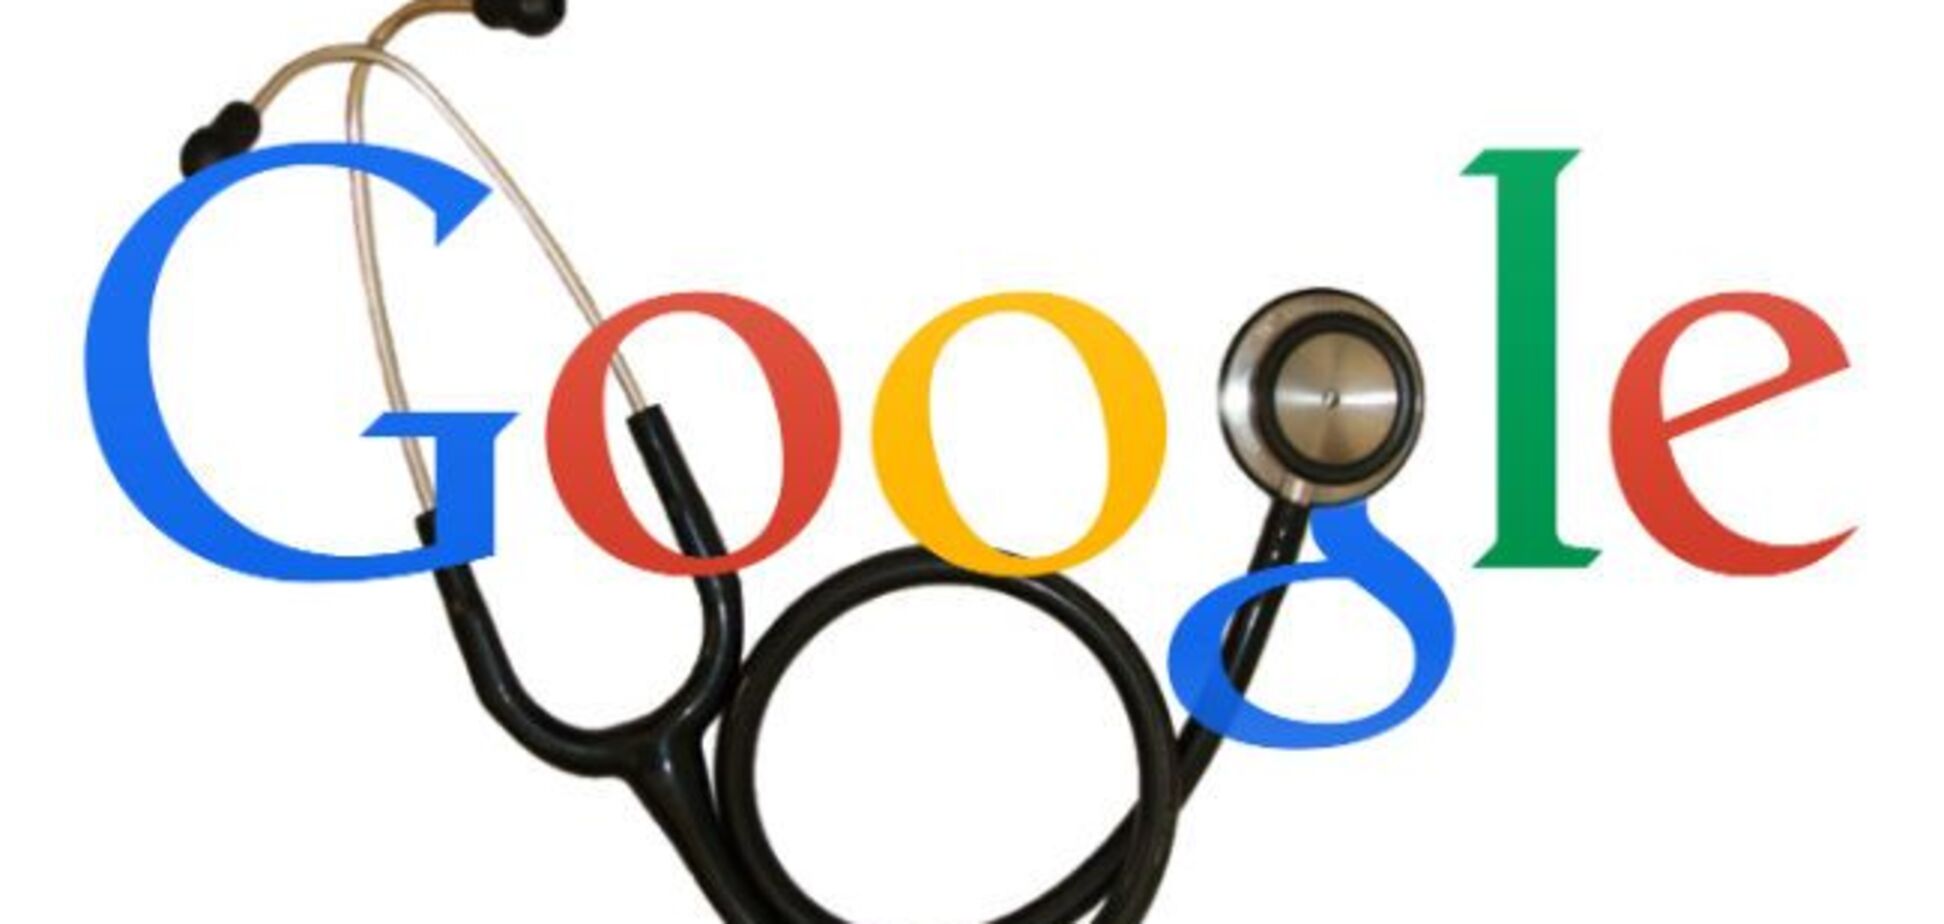 Google купила сервис диагностики болезней с помощью смартфона